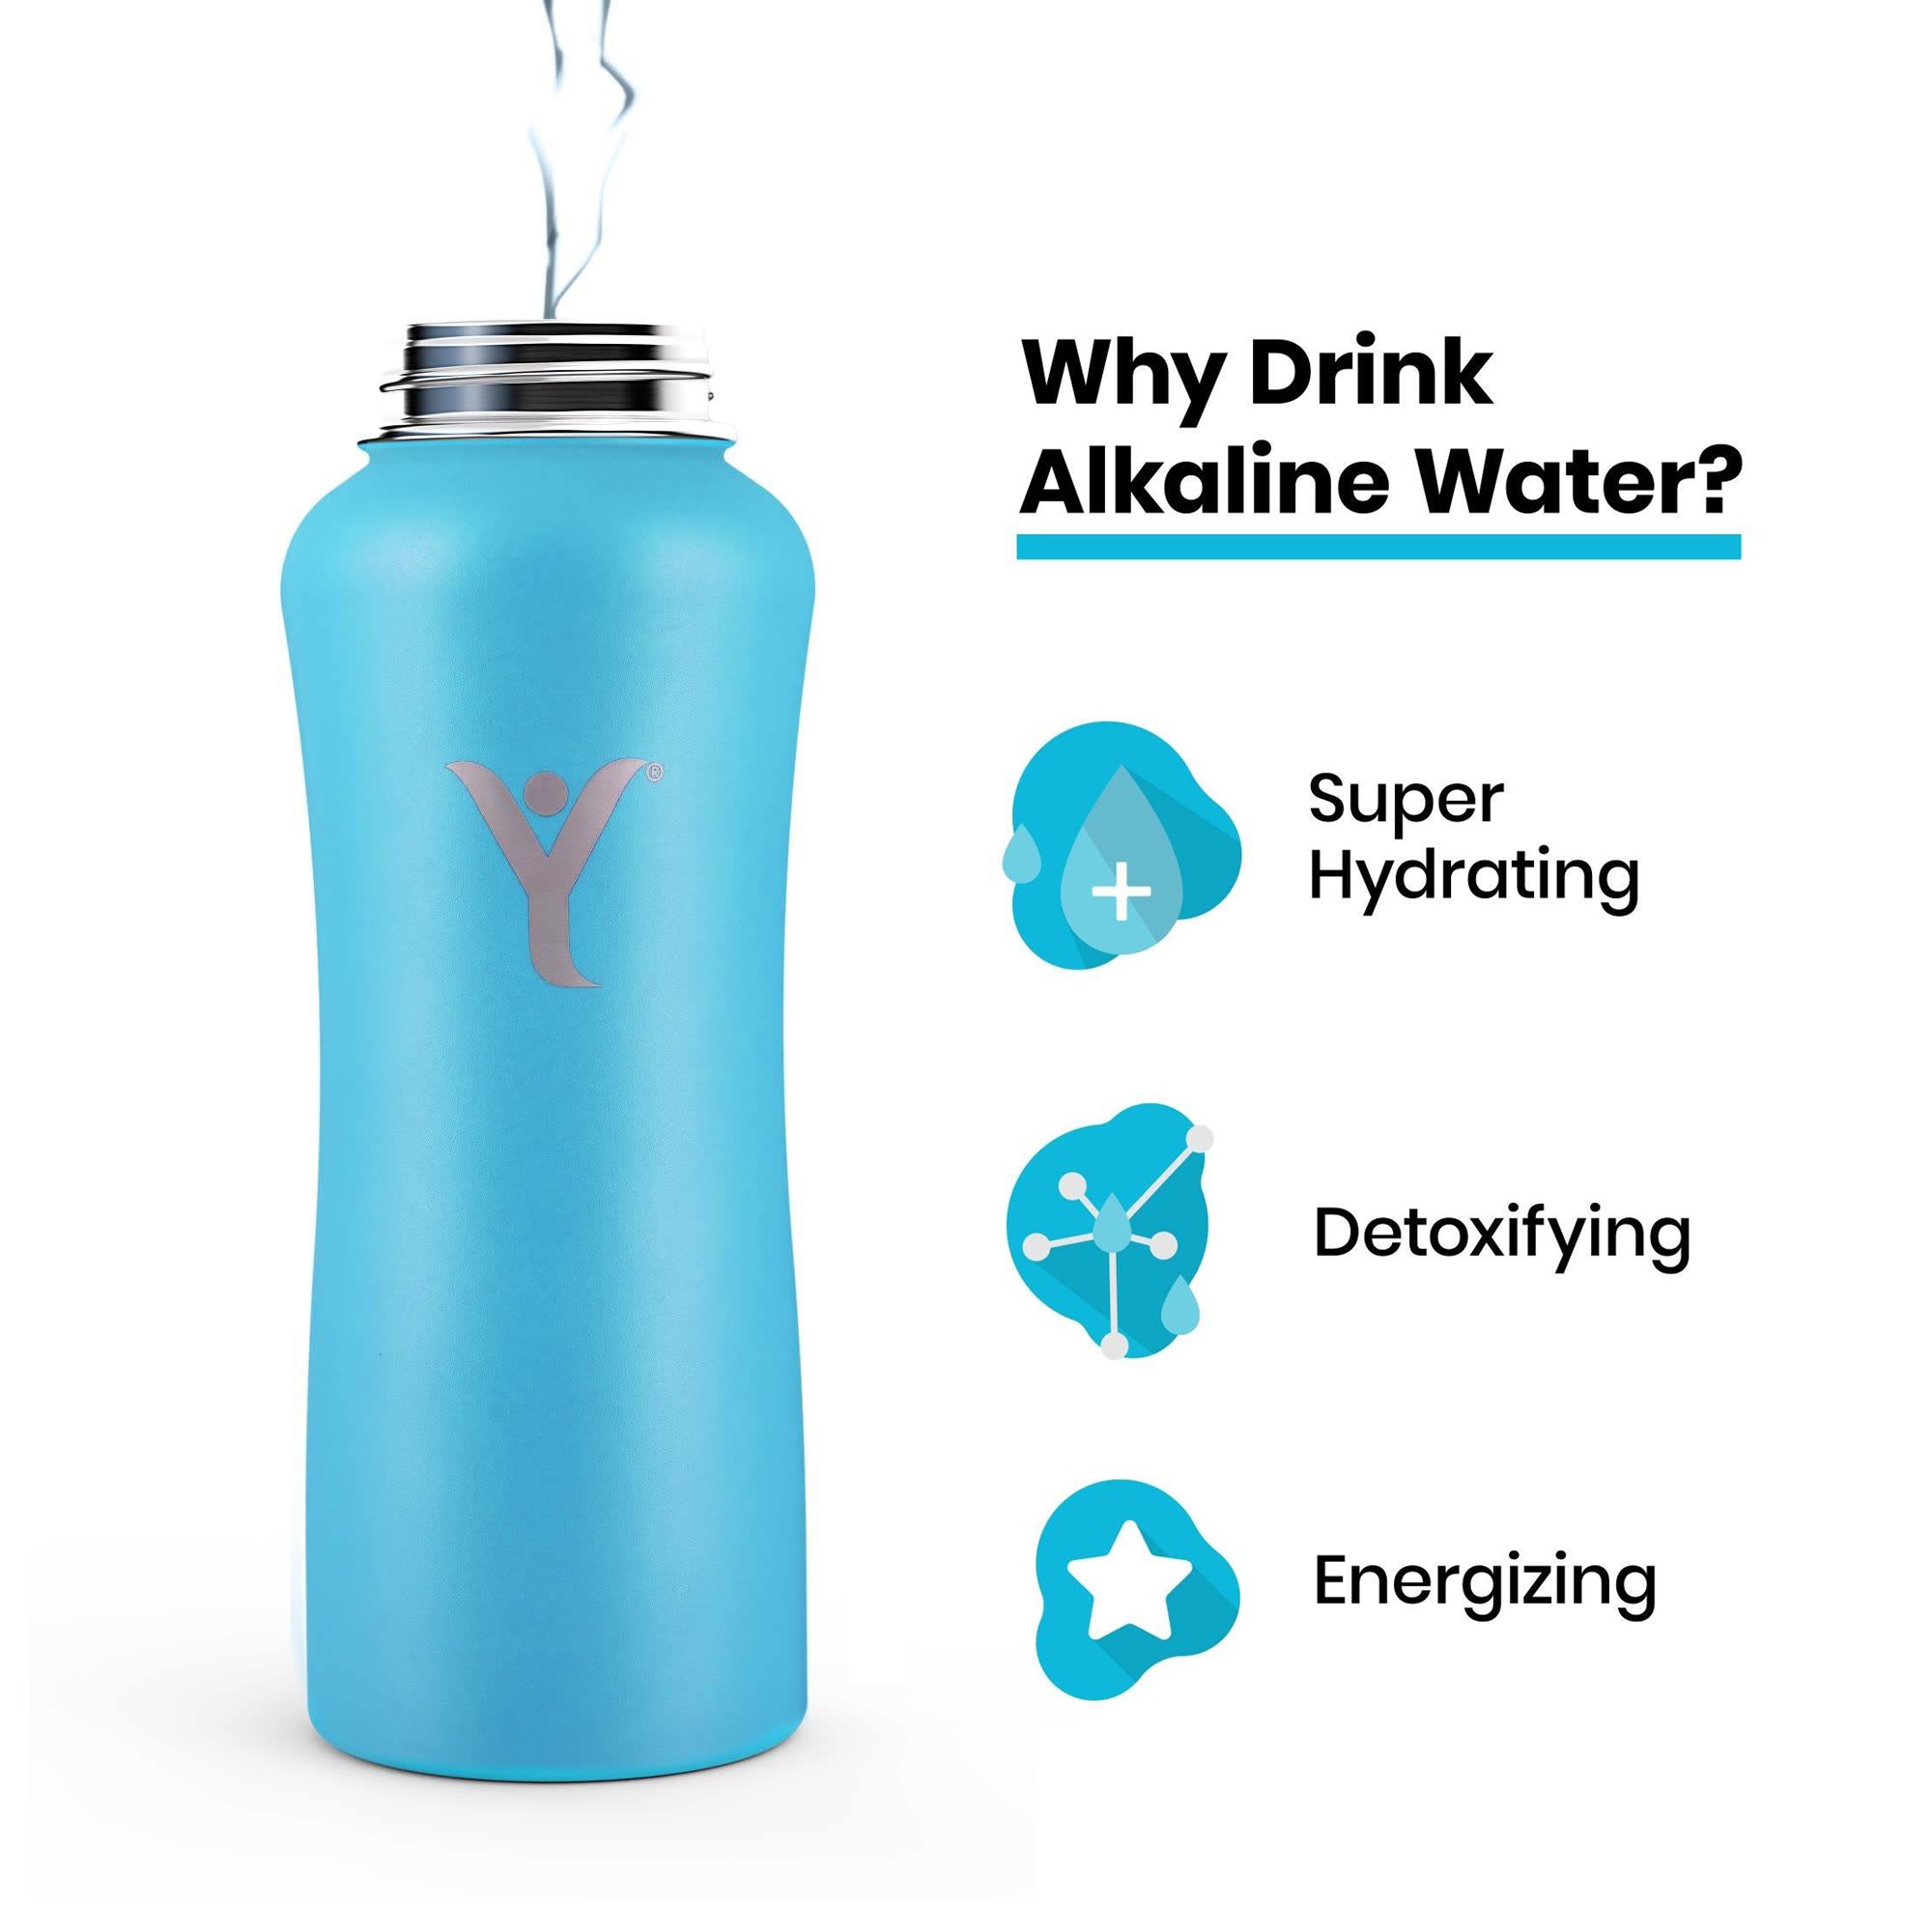 get_the_best_Alkaline Water_ad